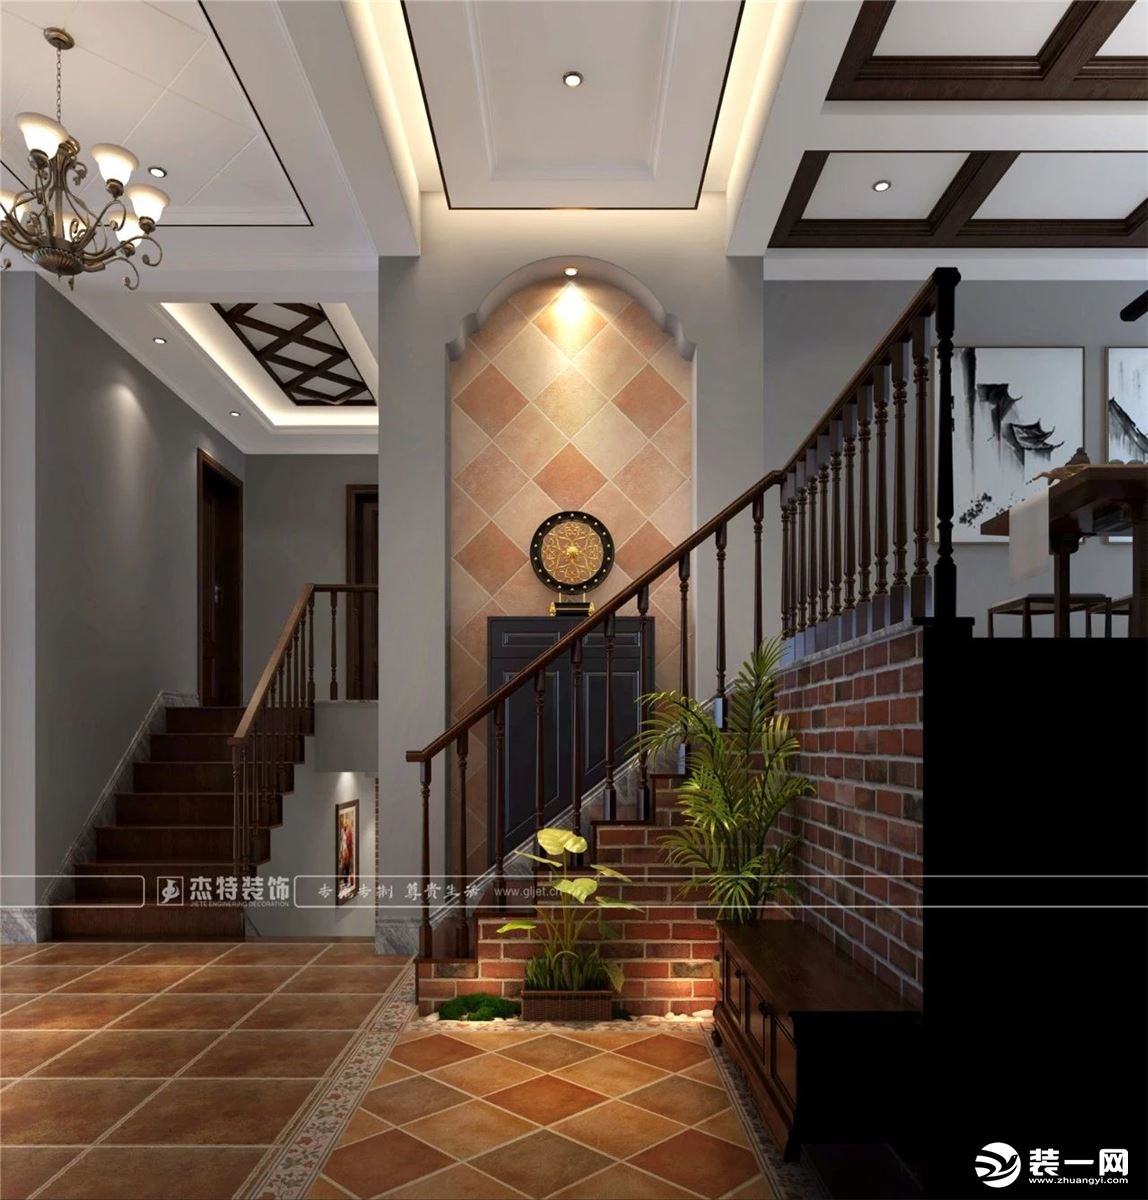 桂林杰特装饰中海元居198平米美式风格装修效果图楼道